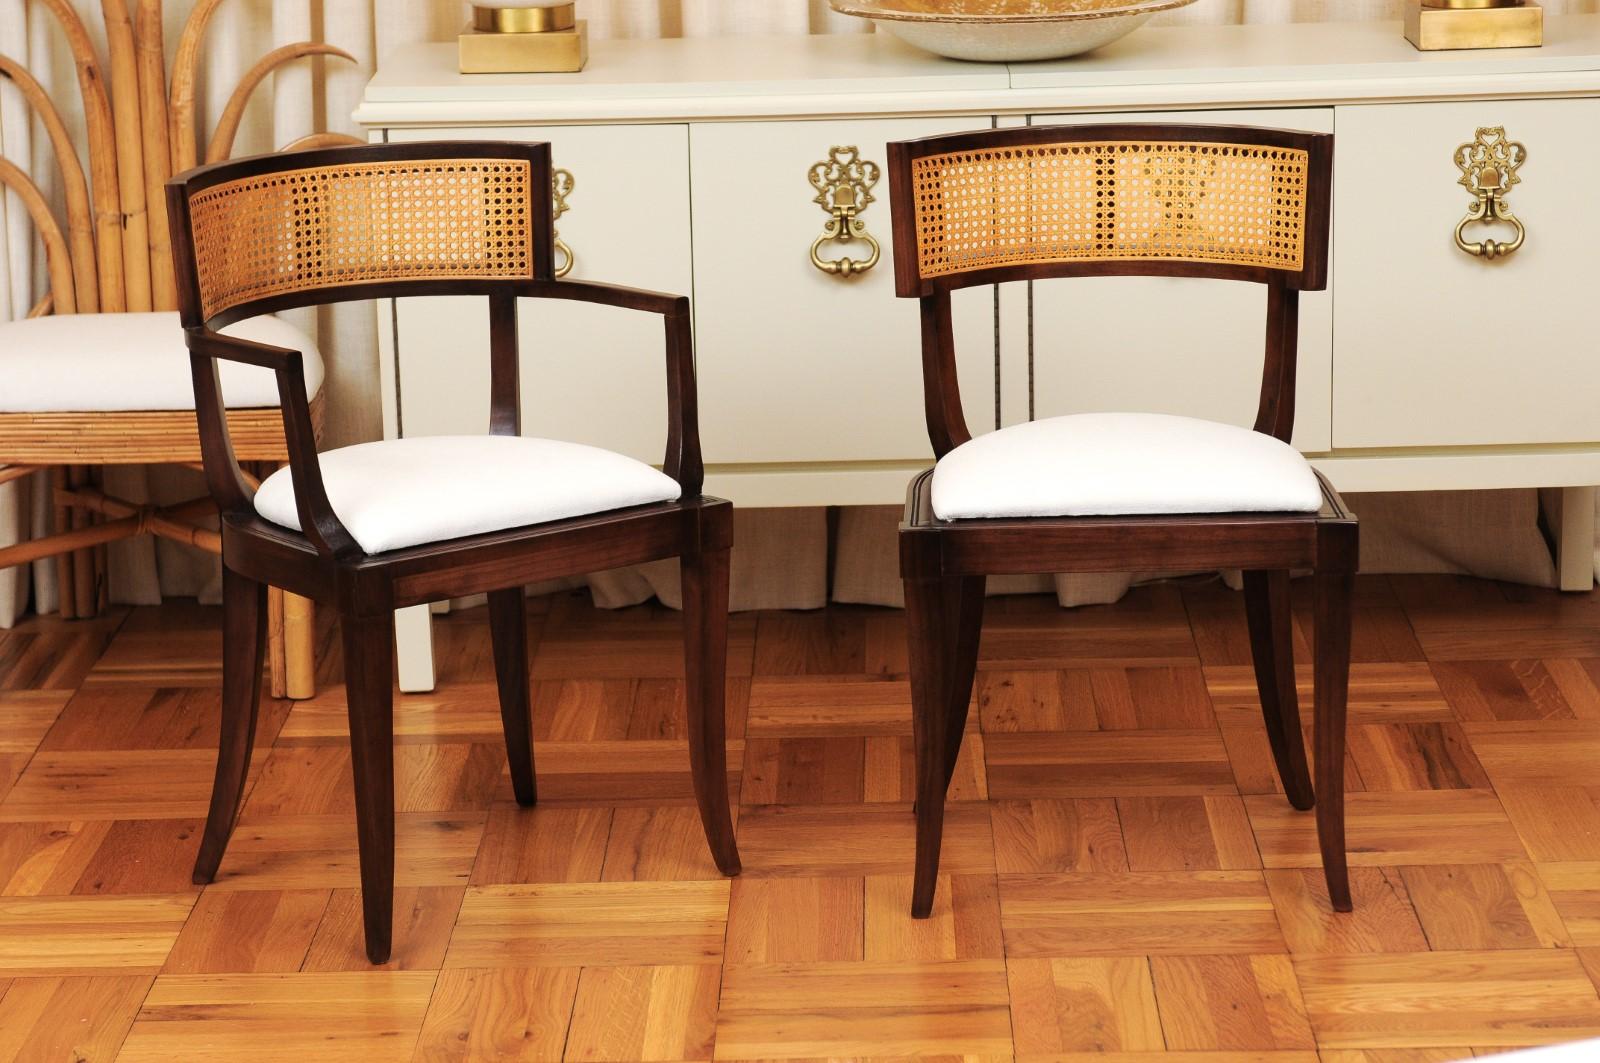 Ces magnifiques chaises de salle à manger sont expédiées telles qu'elles ont été photographiées par des professionnels et décrites dans le texte de l'annonce:: entièrement prêtes à être installées. Ce grand ensemble d'exemples difficiles à trouver